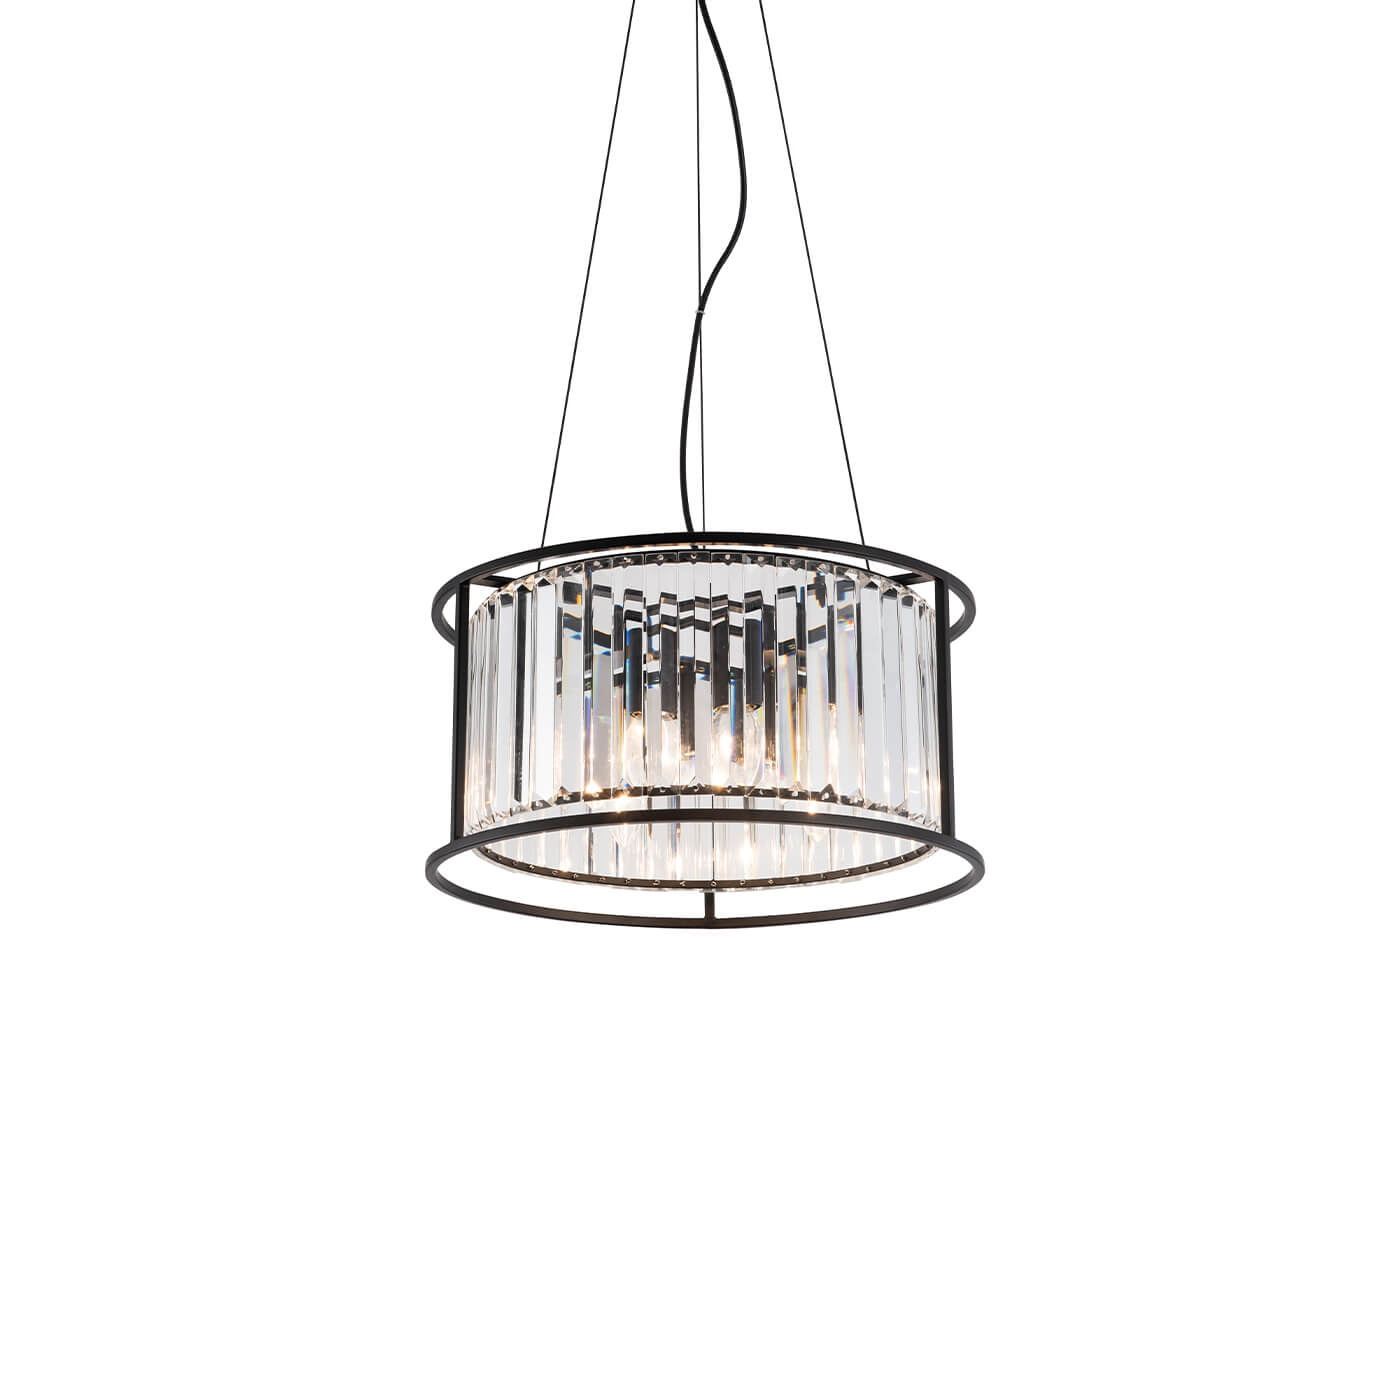 Cauti o lampa suspendata neagra RONDA S4 din sticla, design modern, elegant, pentru living, dining sau dormitor din colectia de lustre si candelabre Domicilio?